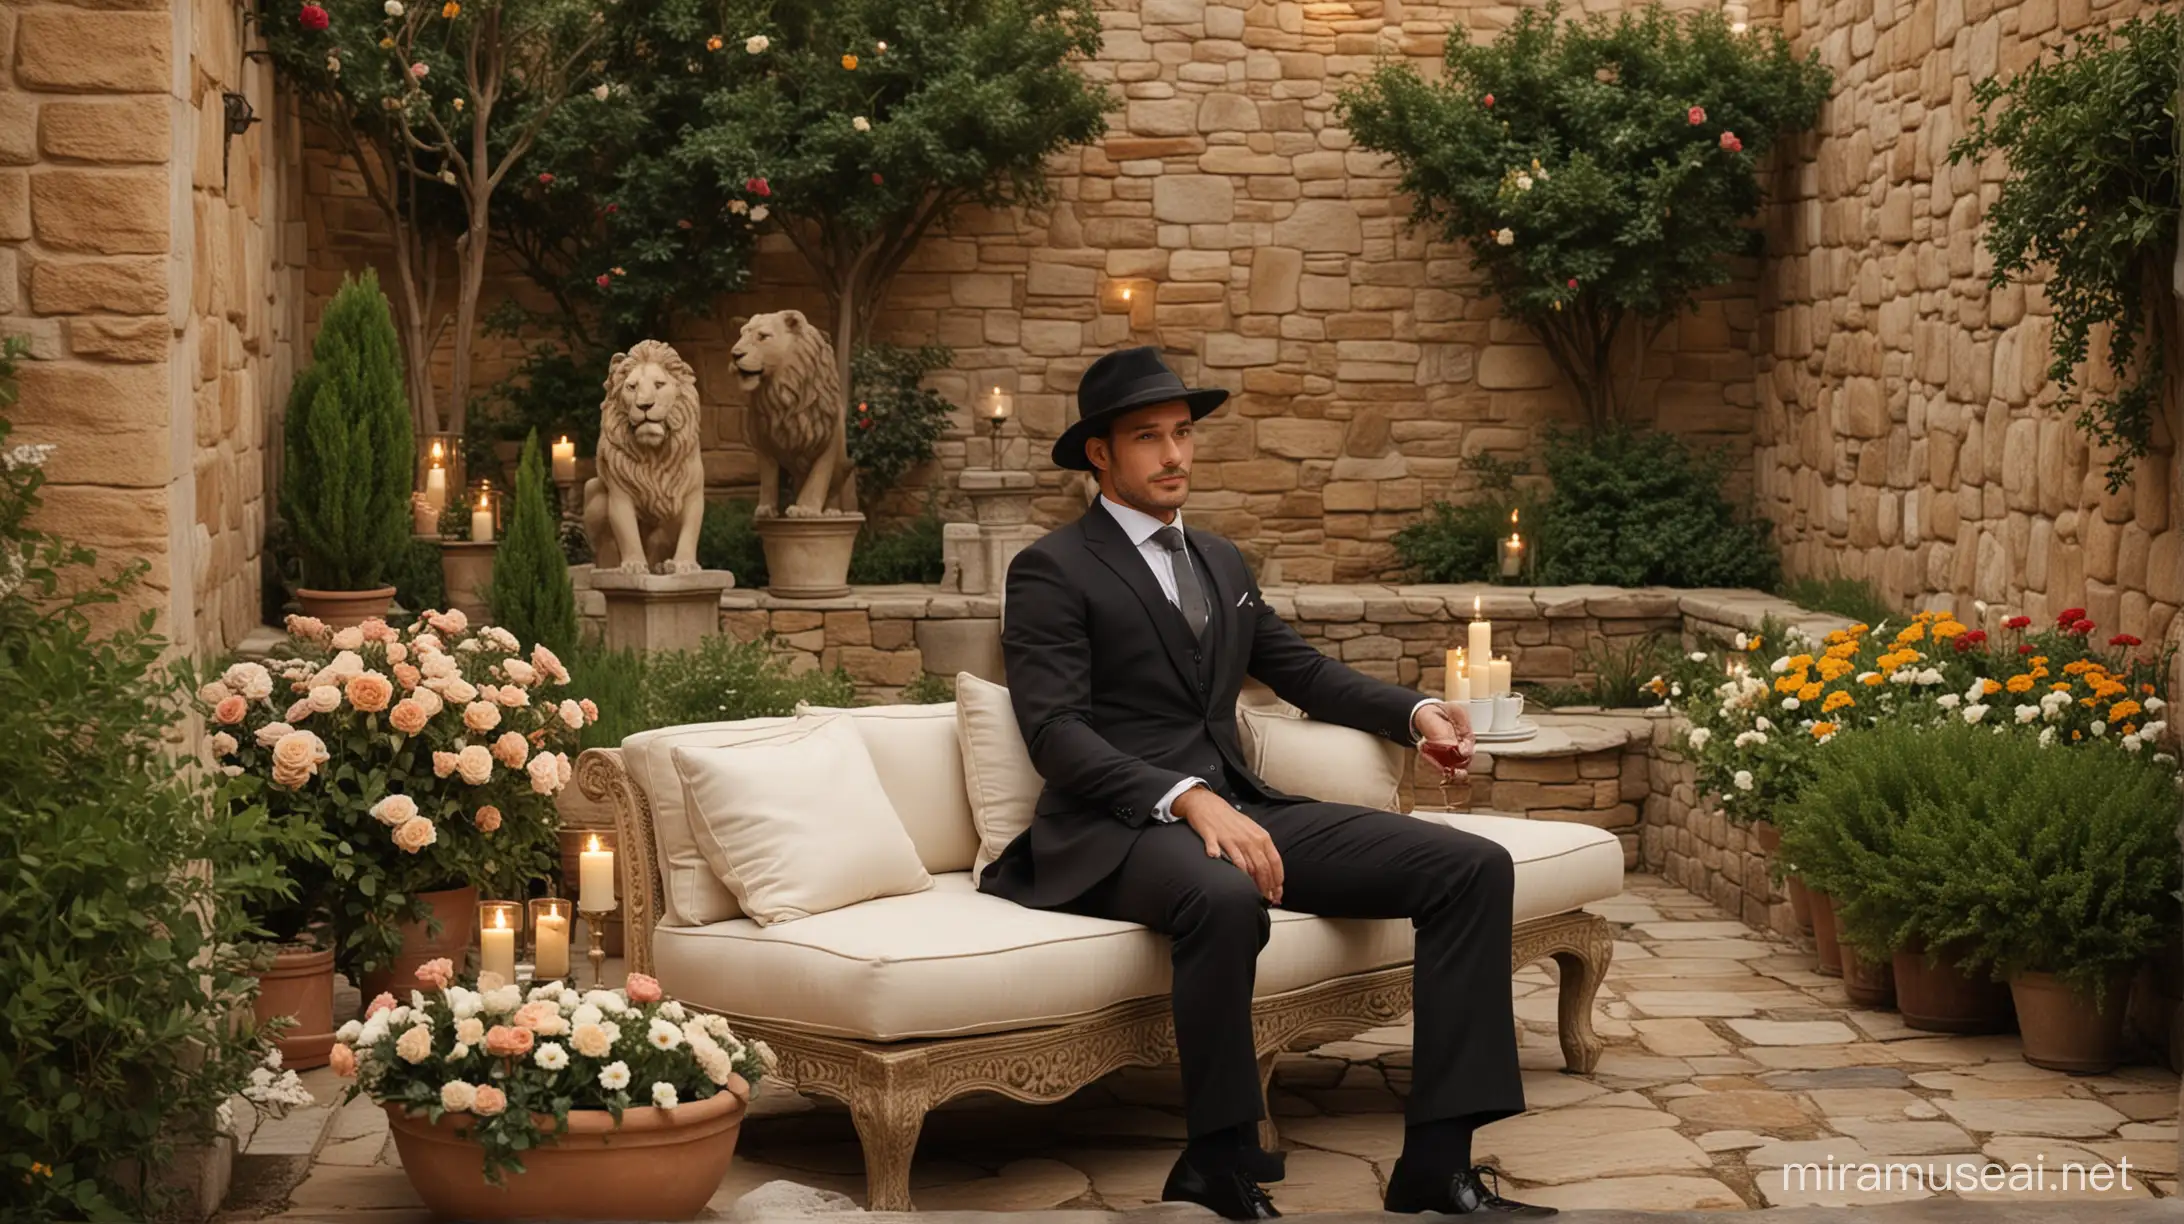 Elegant Man Enjoying Wine in Romantic Italian Garden Setting